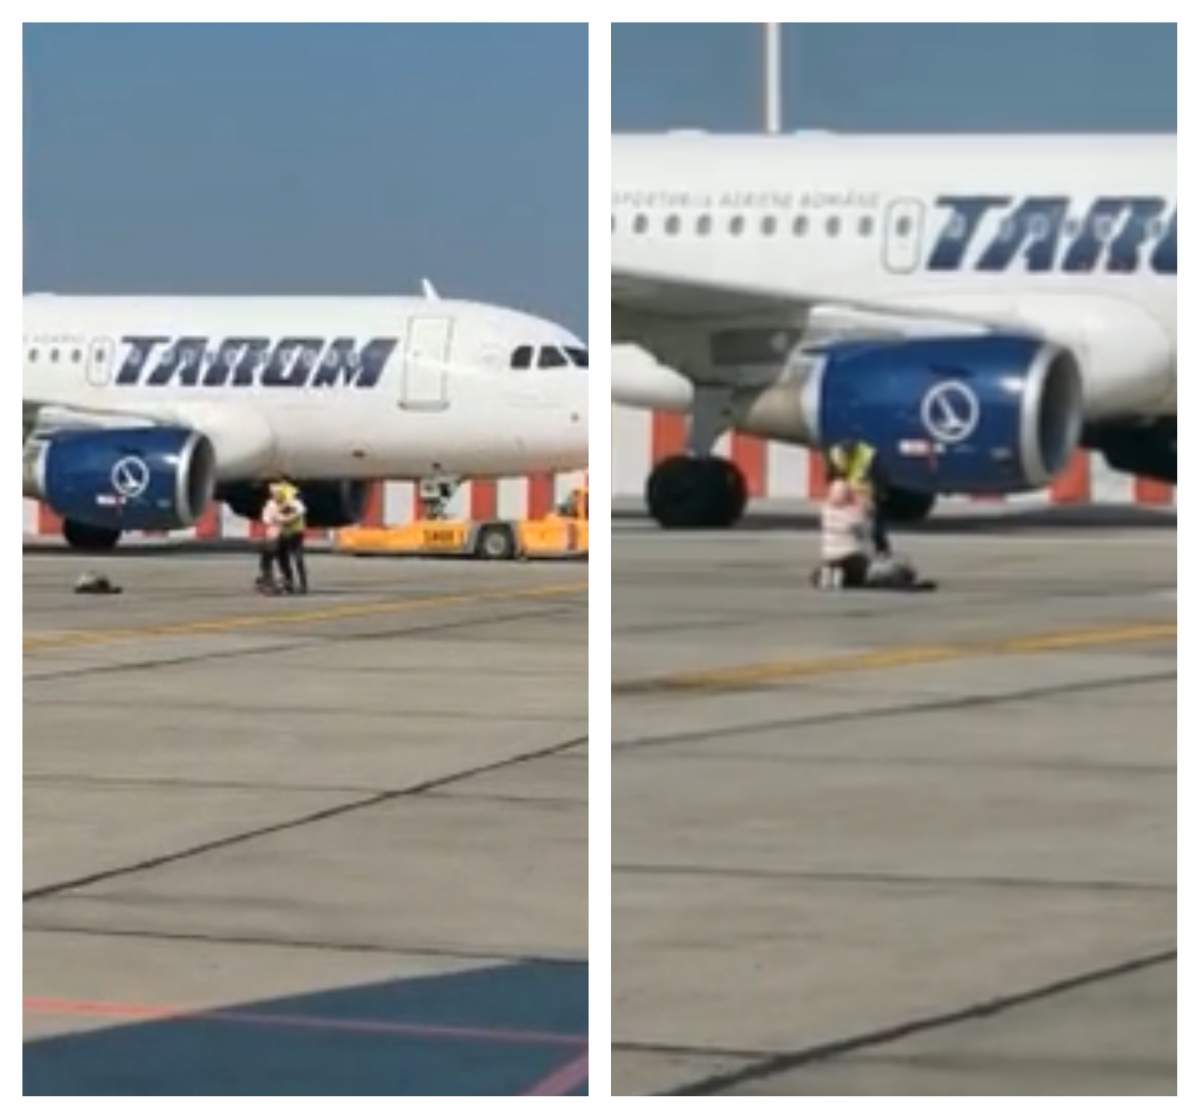 O femeie și fiul ei au vrut sa prindă avionul din mers, pe pista aeroportului Otopeni. Tânăra mamă a întârziat la îmbarcare